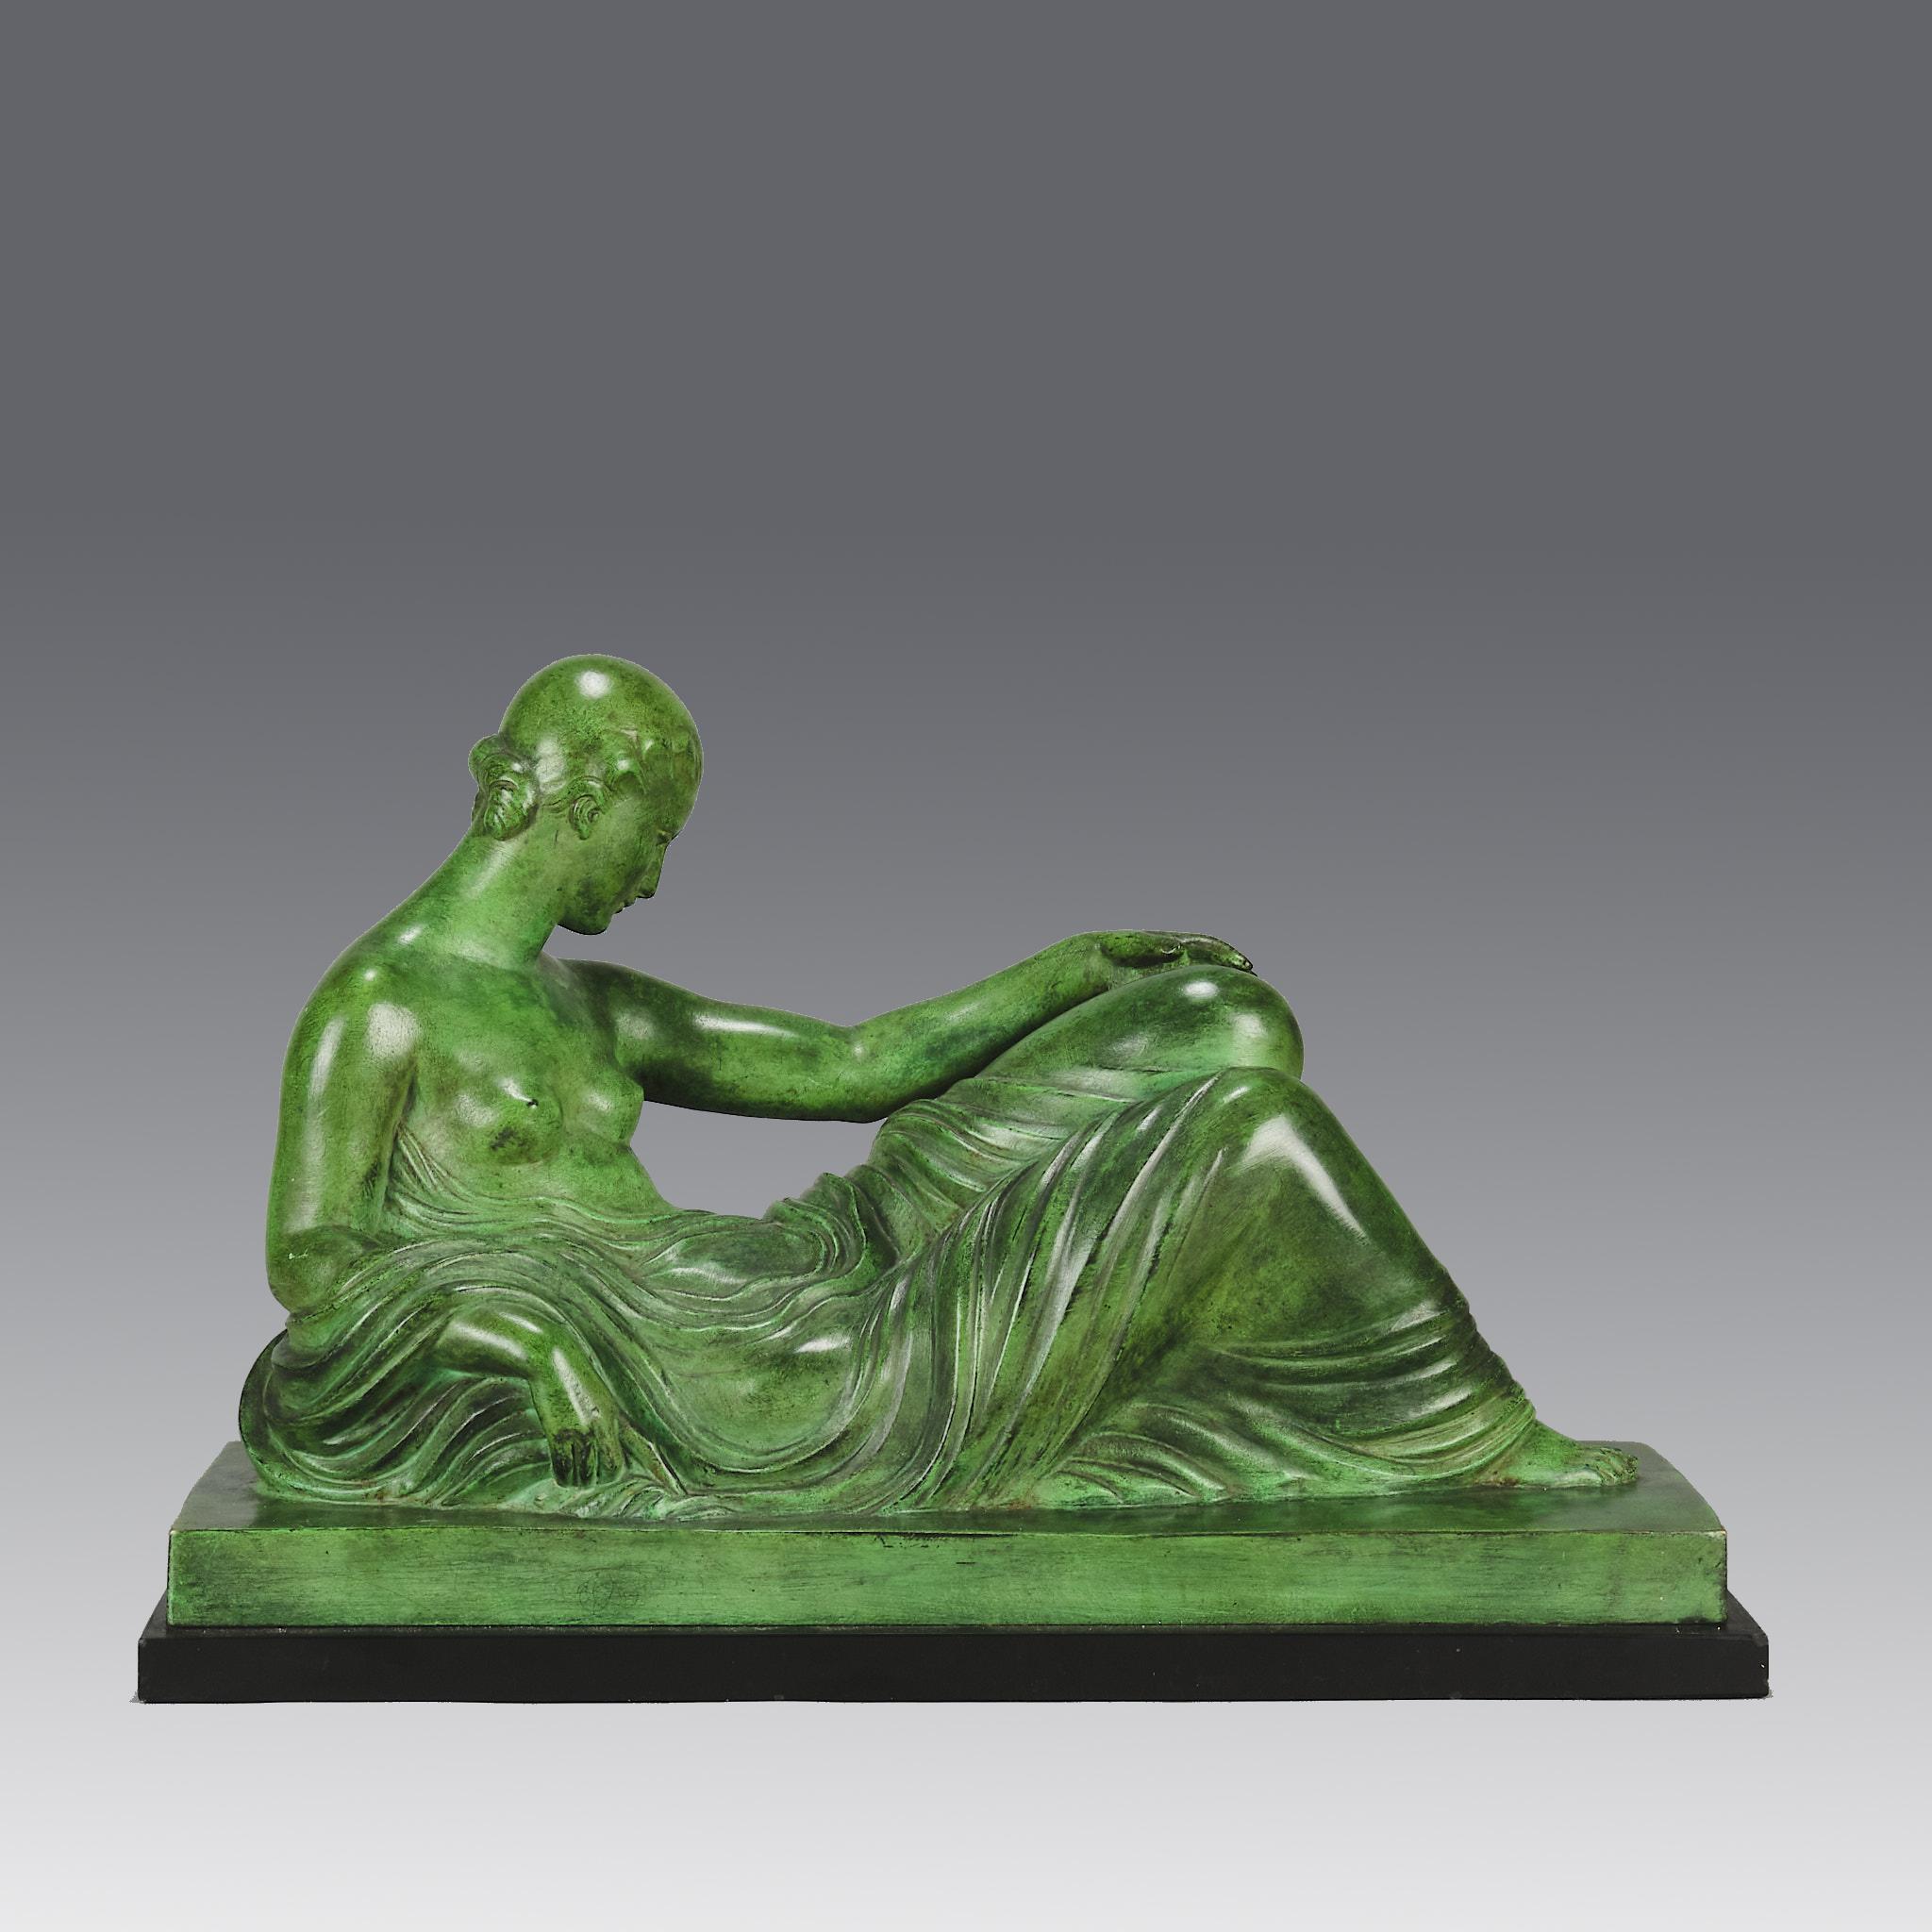 Une jolie figure en bronze Art déco français du début du 20e siècle représentant une beauté au repos, allongée sur un lit de jour, avec un châle délicatement drapé sur elle. Le bronze présente une belle patine vert foncé et de très beaux détails de